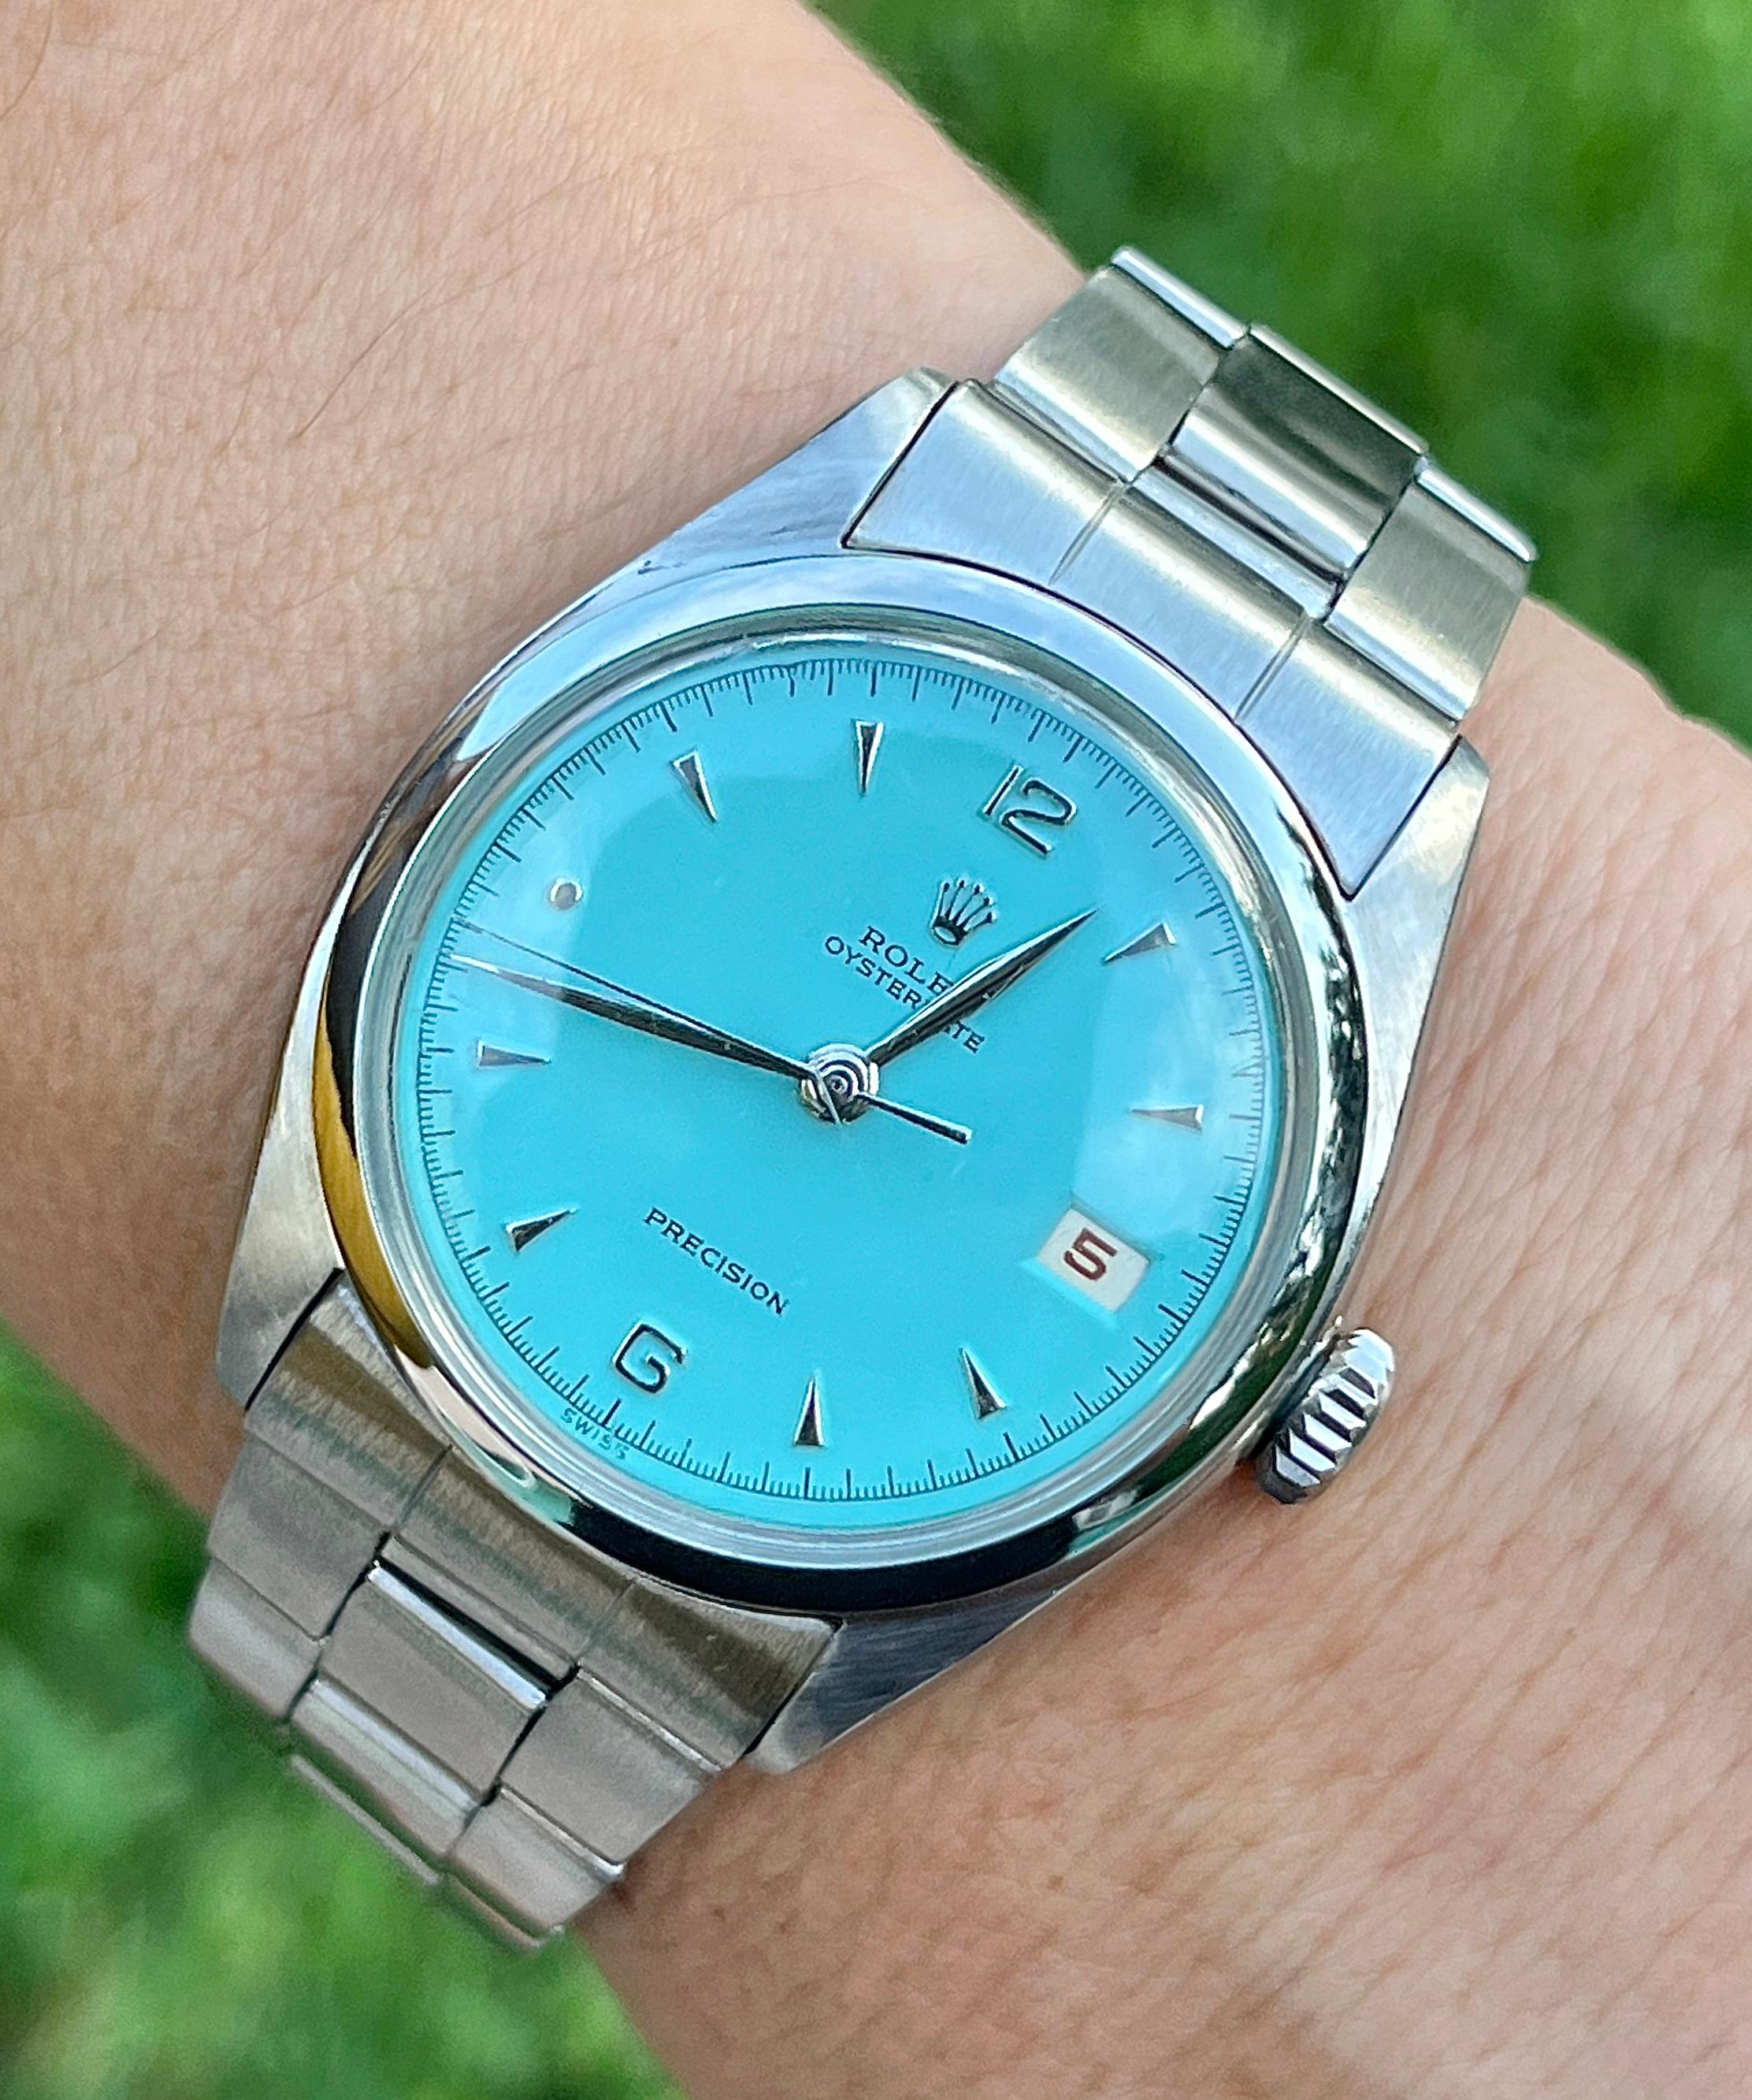 Montre-bracelet vintage en acier inoxydable Rolex Oysterdate Tiffany cadran bleu. Vers 1963. Elle est dotée d'un bracelet Oyster bien entretenu, d'une boucle déployante, d'une couronne vissée et de 17 rubis. Elle comporte également des aiguilles et